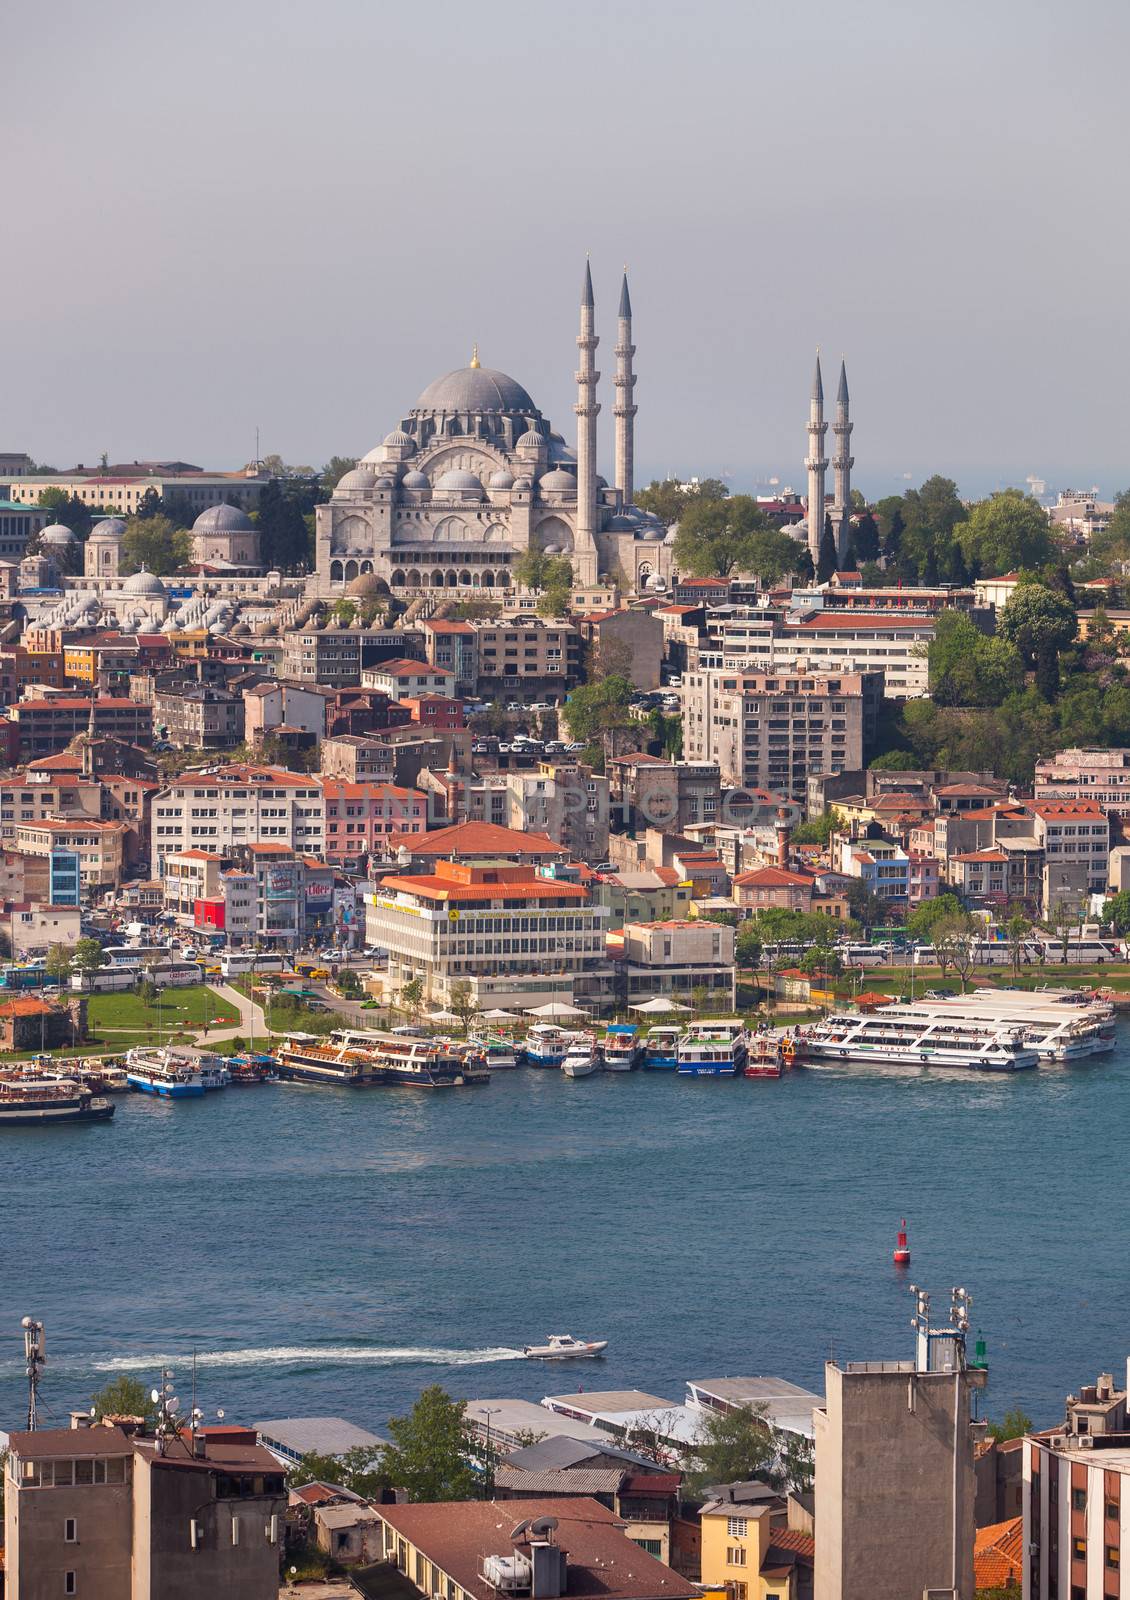 Hagia Sophia by Creatista